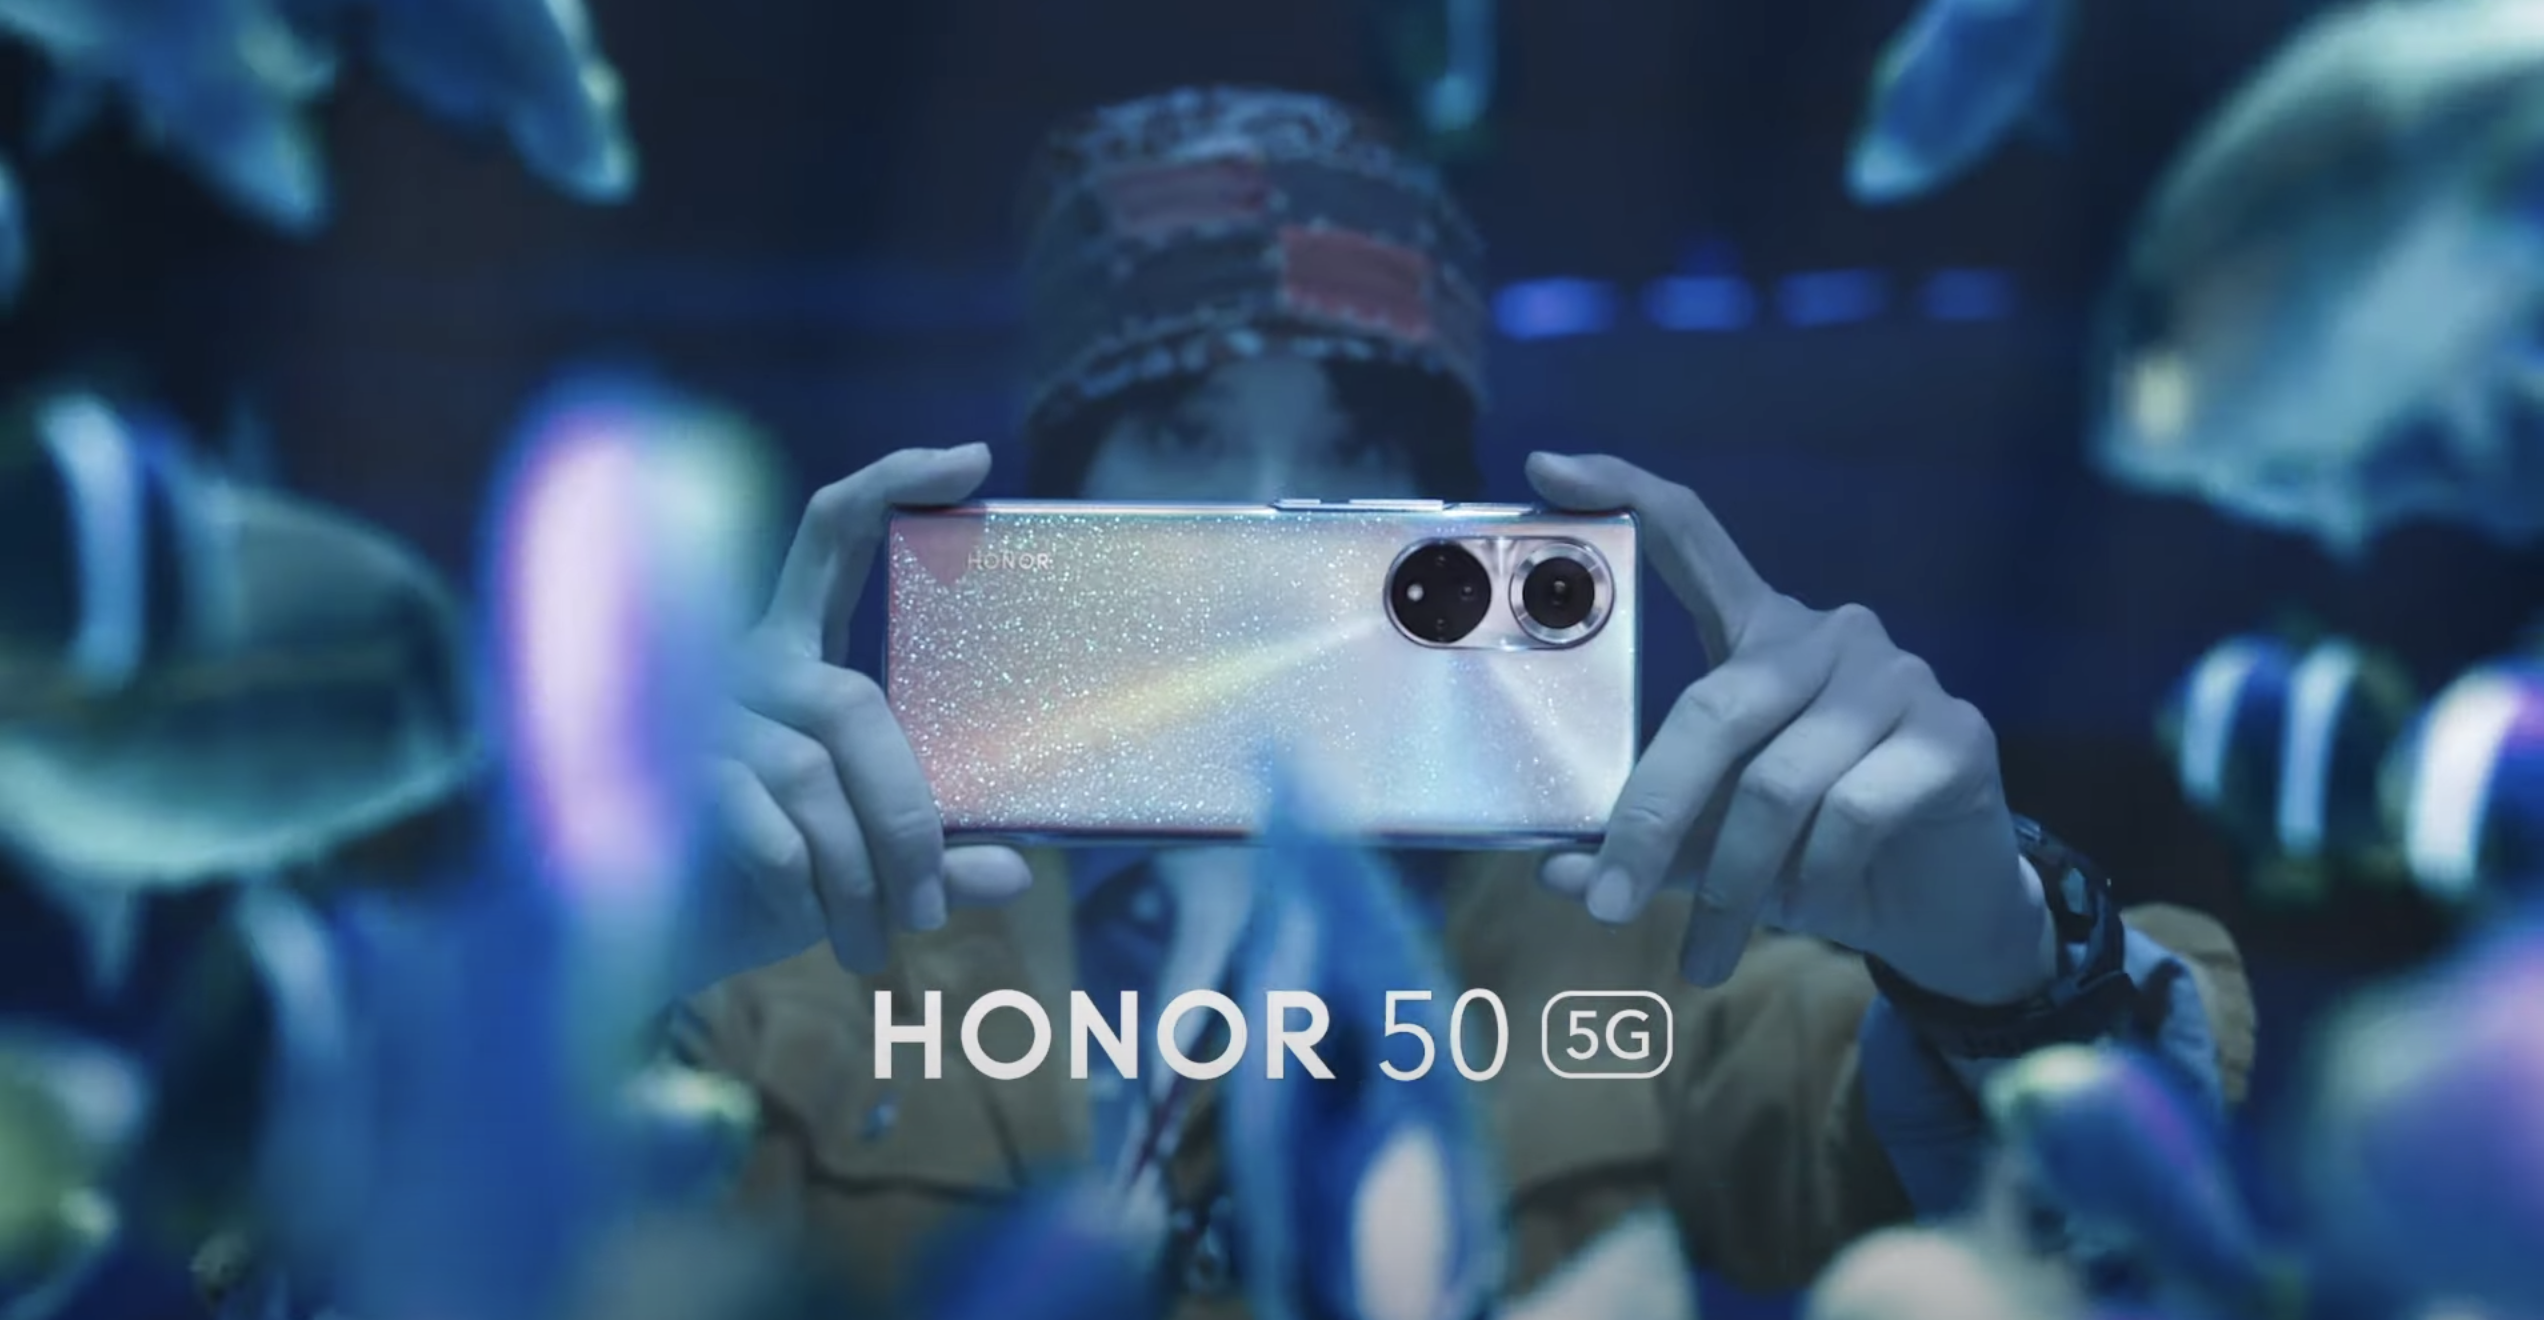 Probamos el Honor 50: una gran pantalla, cámara y el regreso de Google